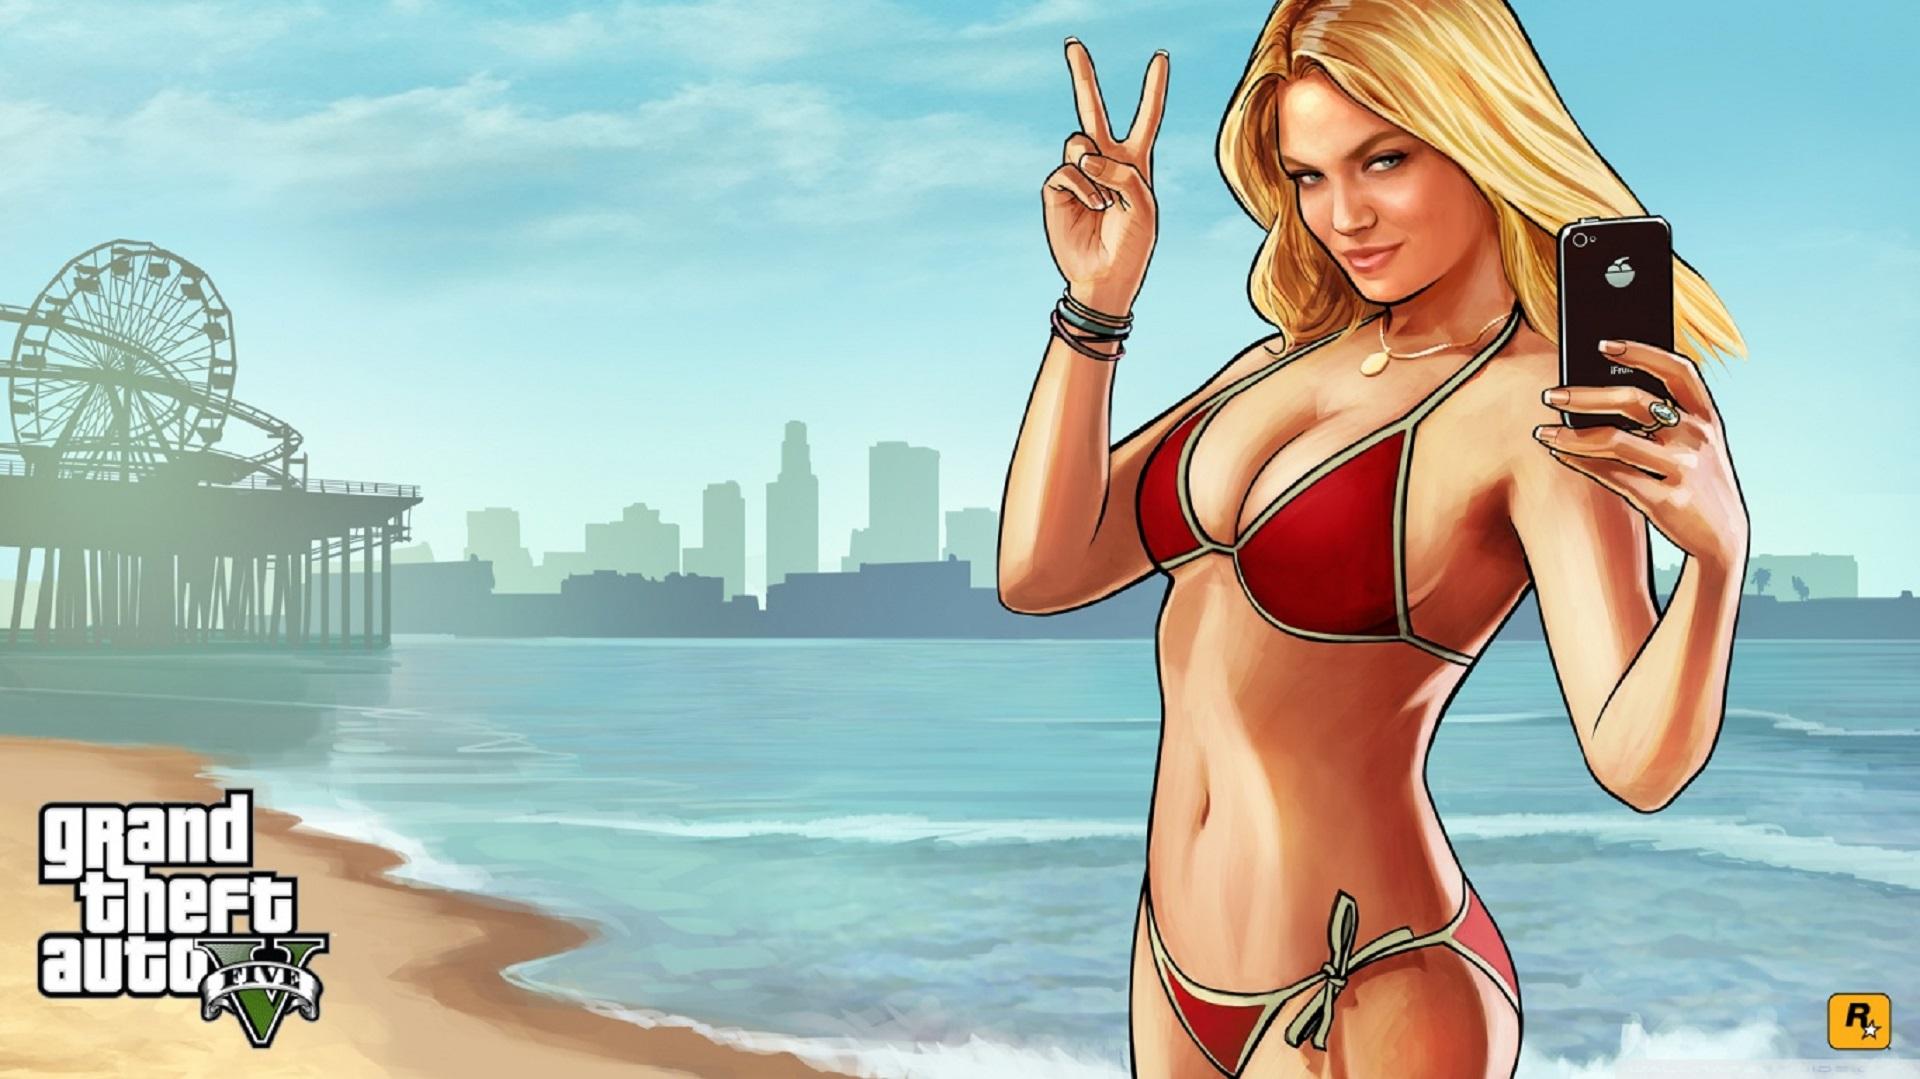 Phát hiện “ma điện thoại” mới trong Grand Theft Auto V